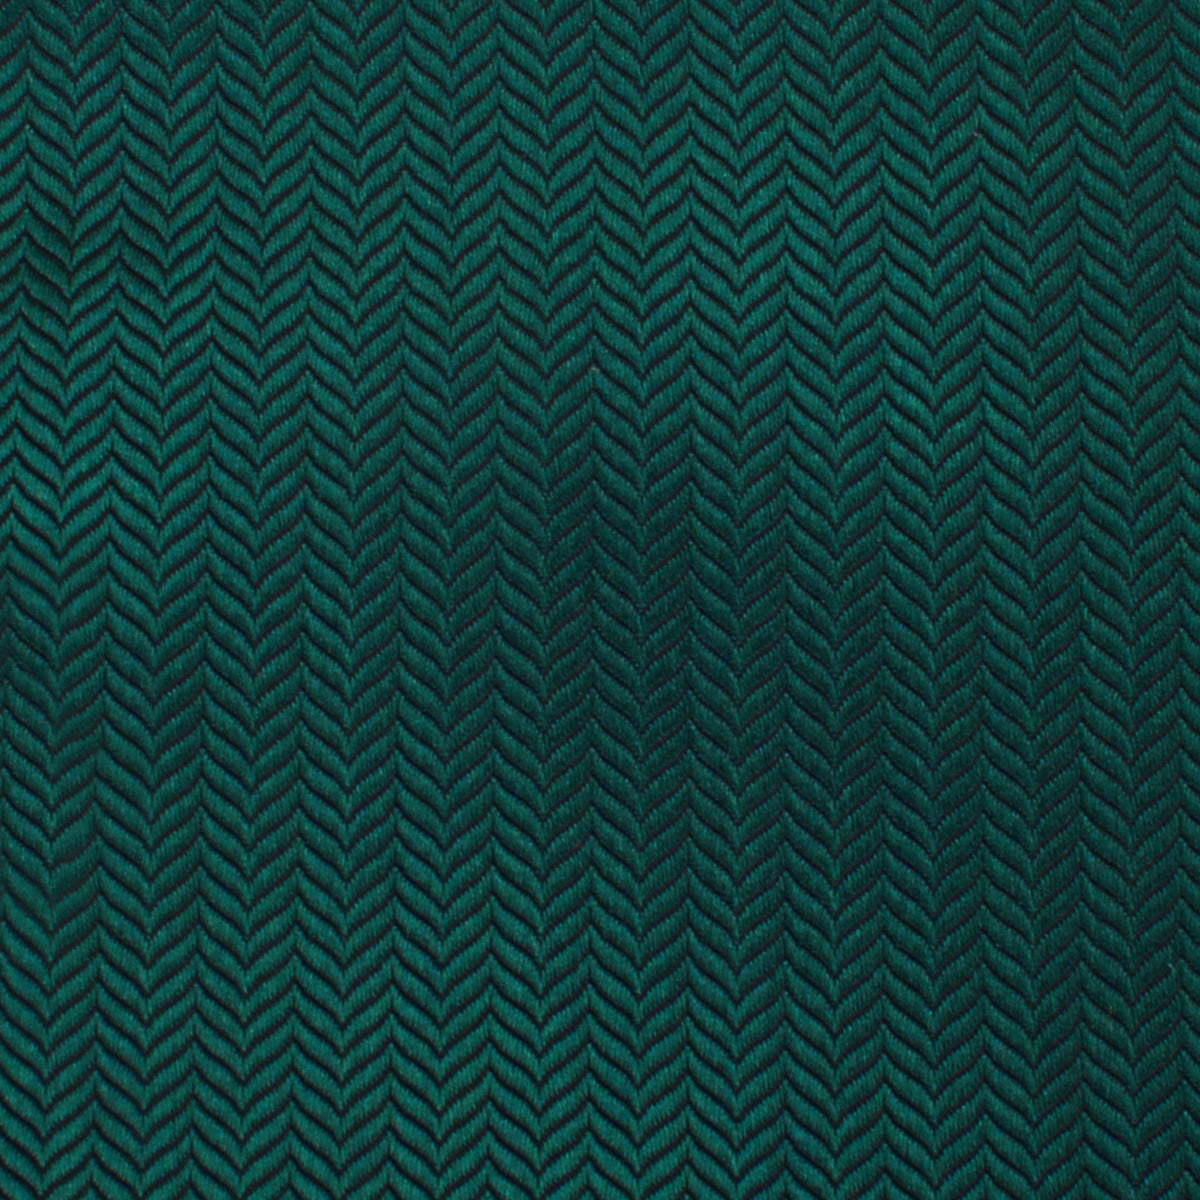 Dark Green Herringbone Bow Tie Fabric